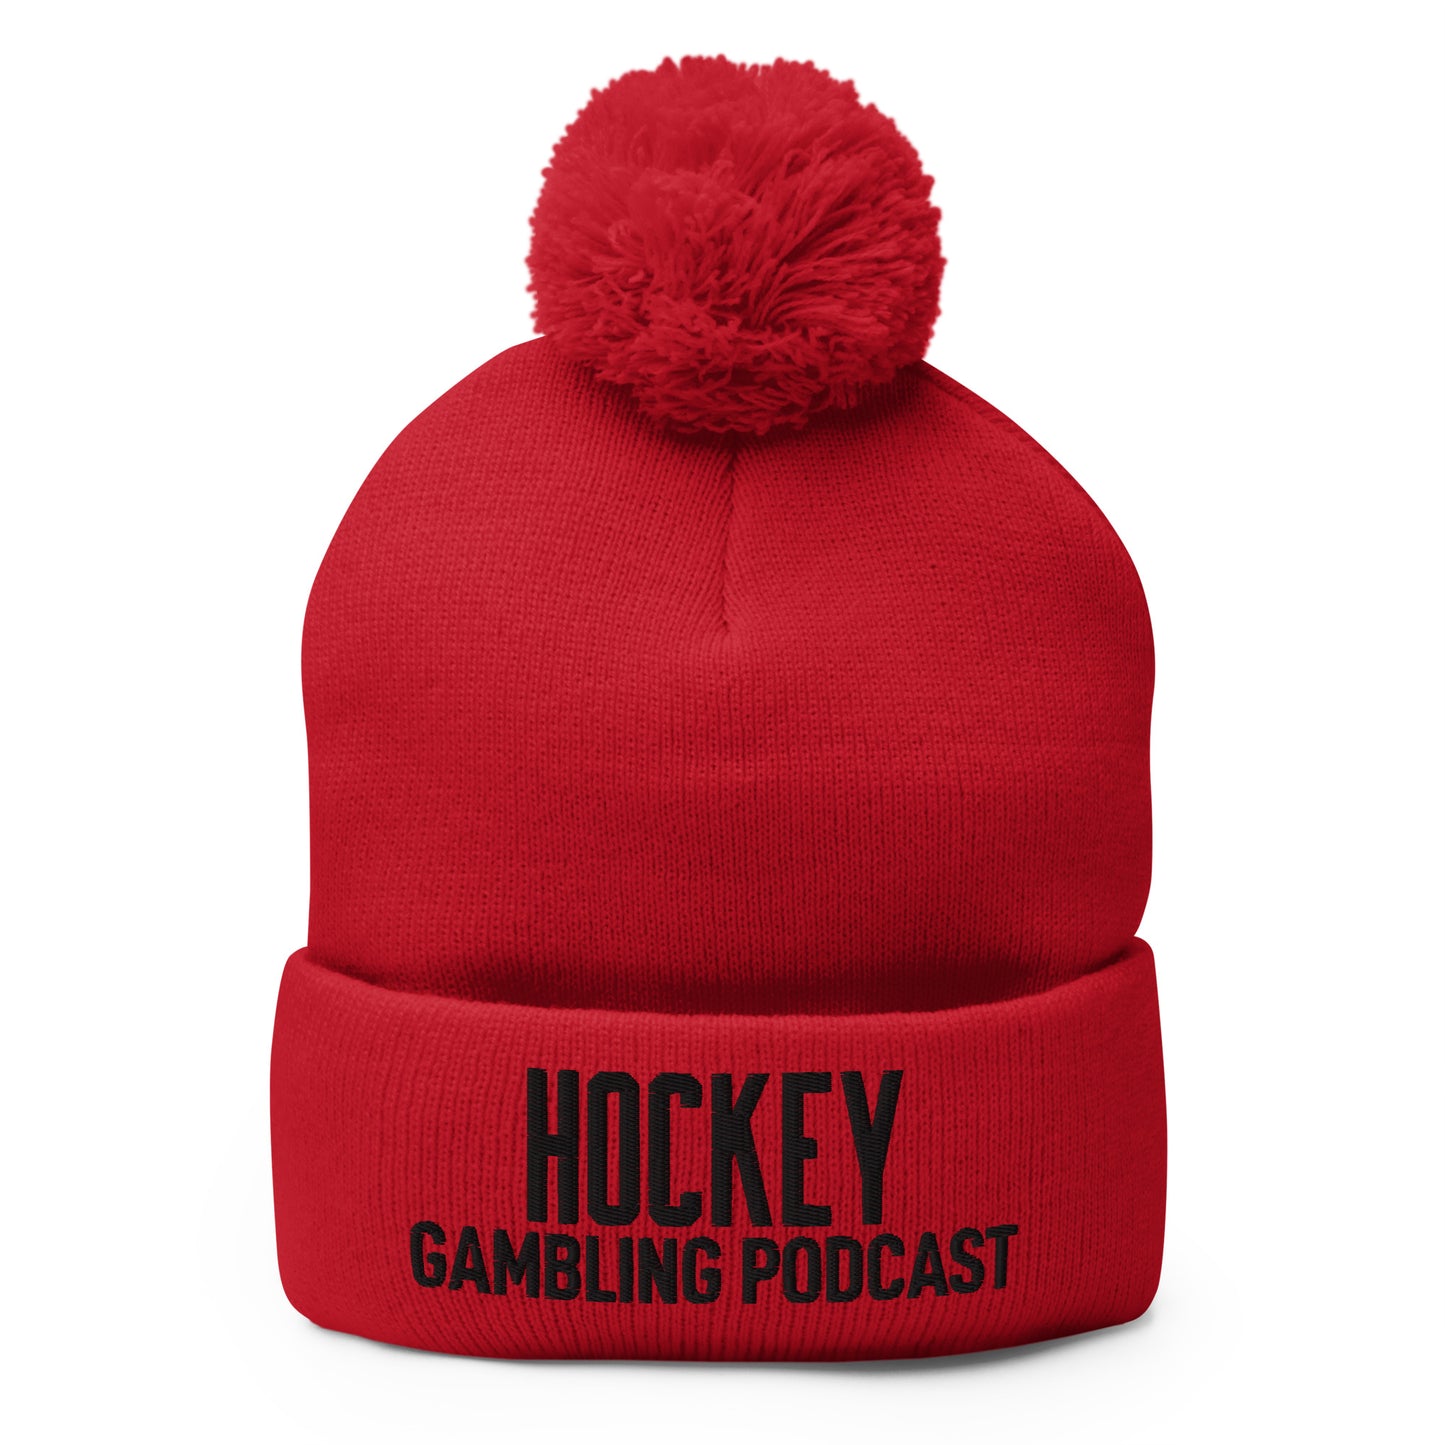 Hockey Gambling Podcast - Pom-Pom Beanie (Black Logo)